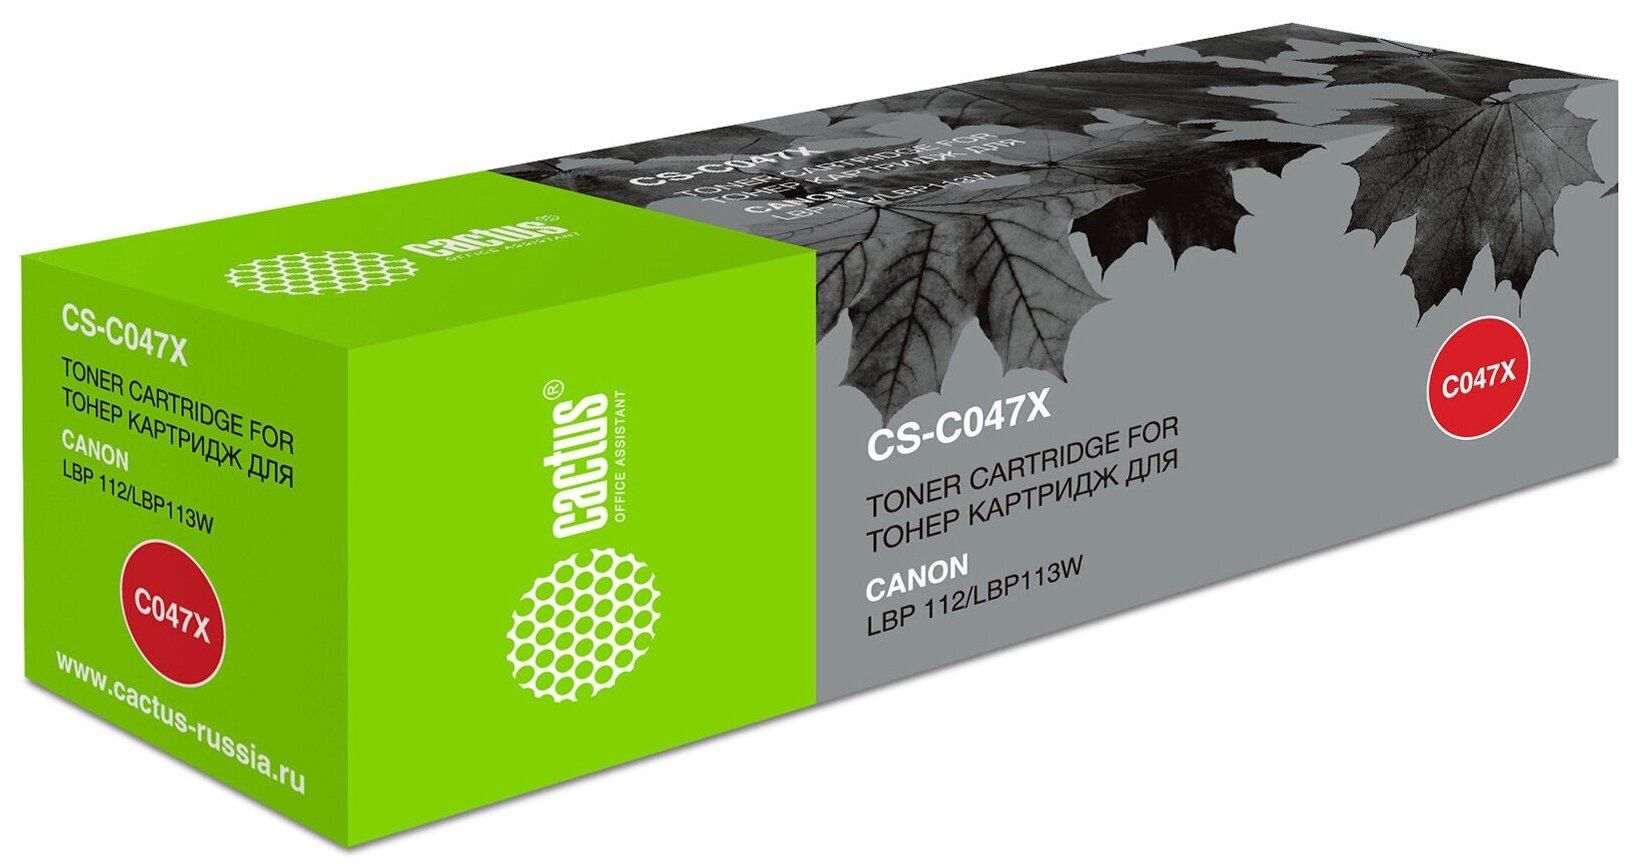 Картридж C-047X для Кэнон, Canon i-SENSYS LBP112, LBP113W, MF112, MF113w